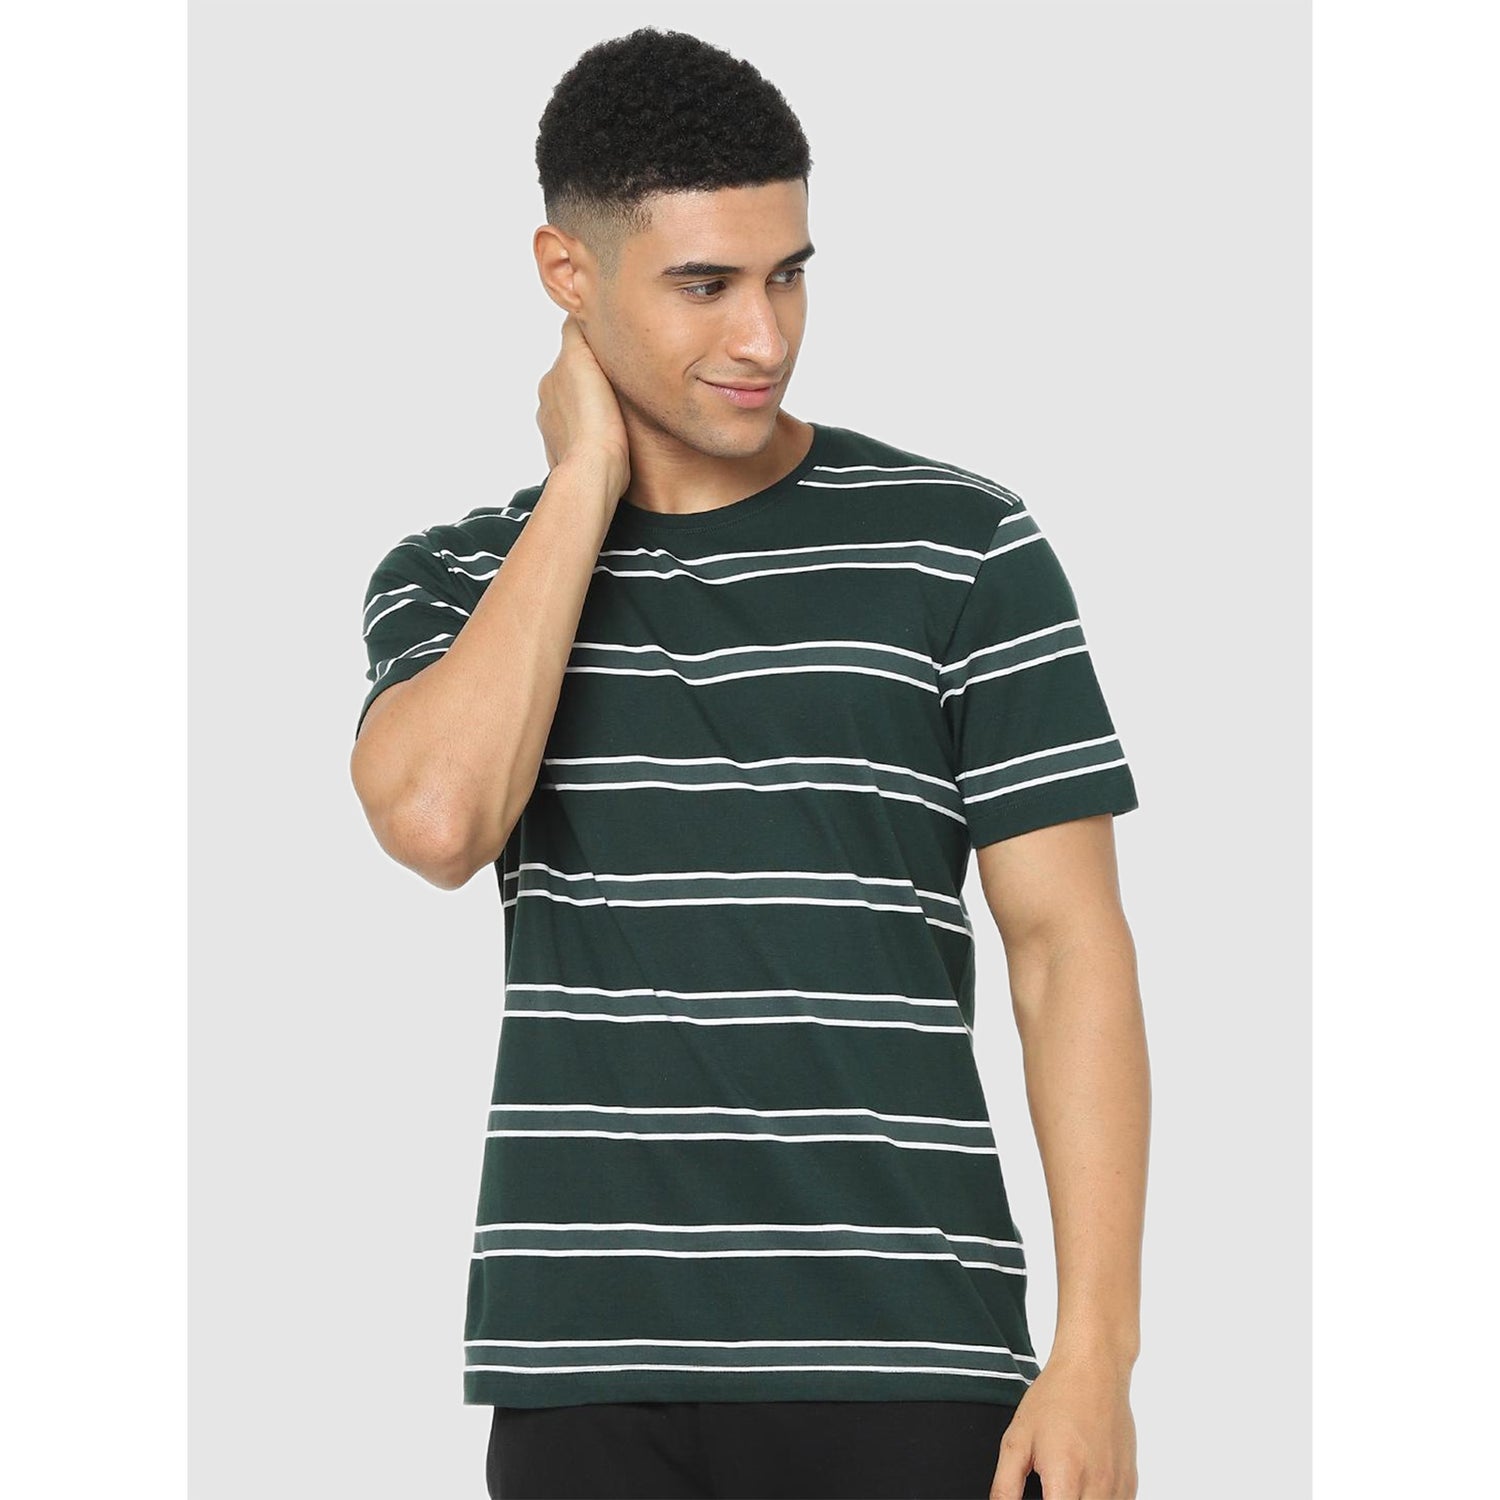 Green Regular Fit Striped T-shirt (CESTRIPE)